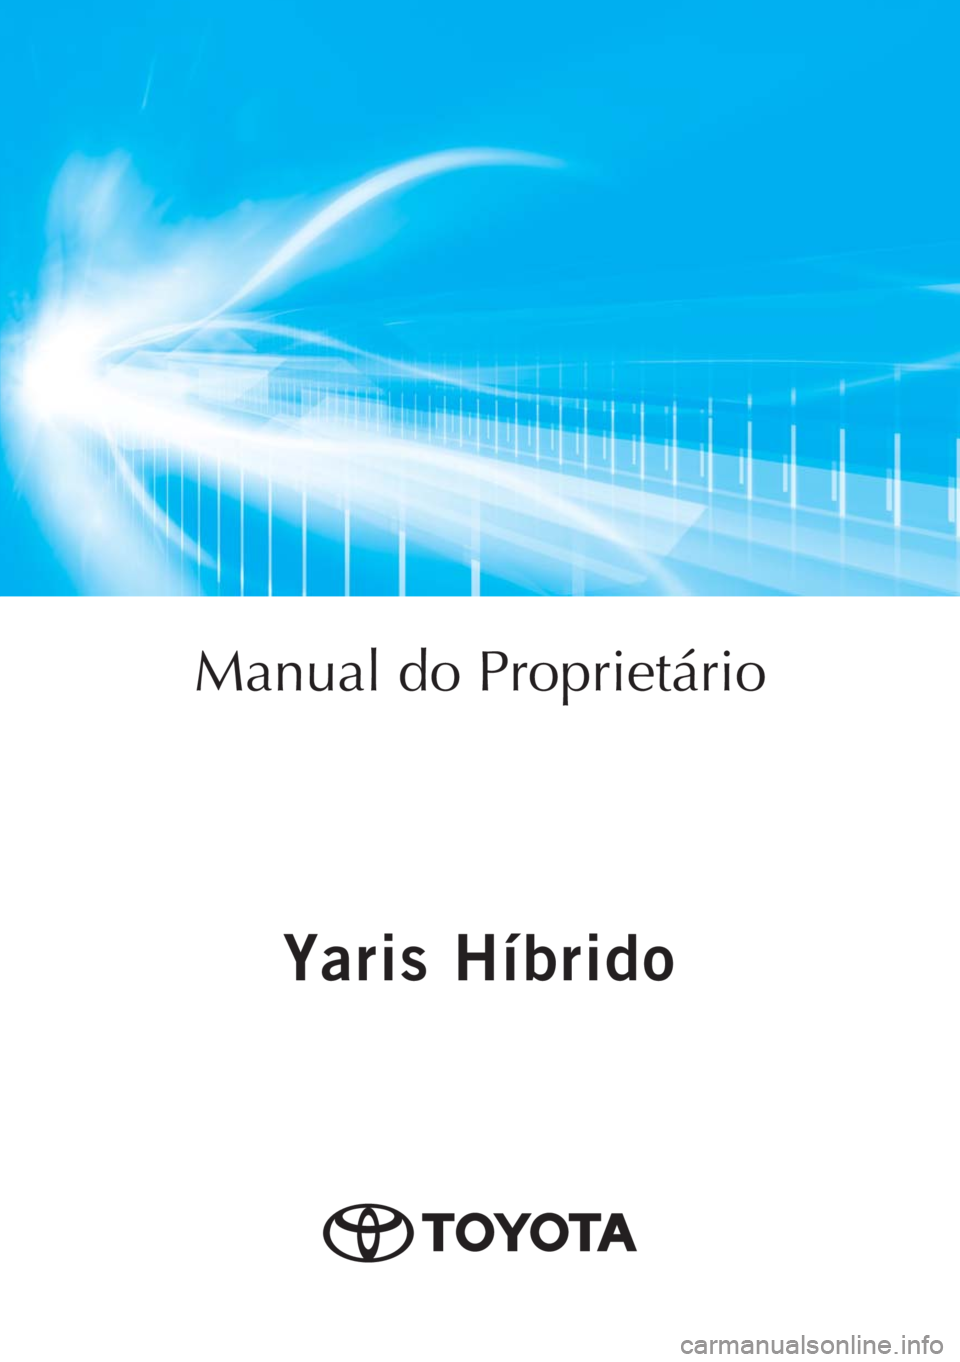 TOYOTA YARIS HATCHBACK 2017  Manual de utilização (in Portuguese) Yaris Híbrido
Yaris Híbrido
Manual do Proprietário
Mod. OM52J66EPT
Public. N.º OM52J66E
ORGAL-PORTOToyota Caetano Portugal, S.A. 